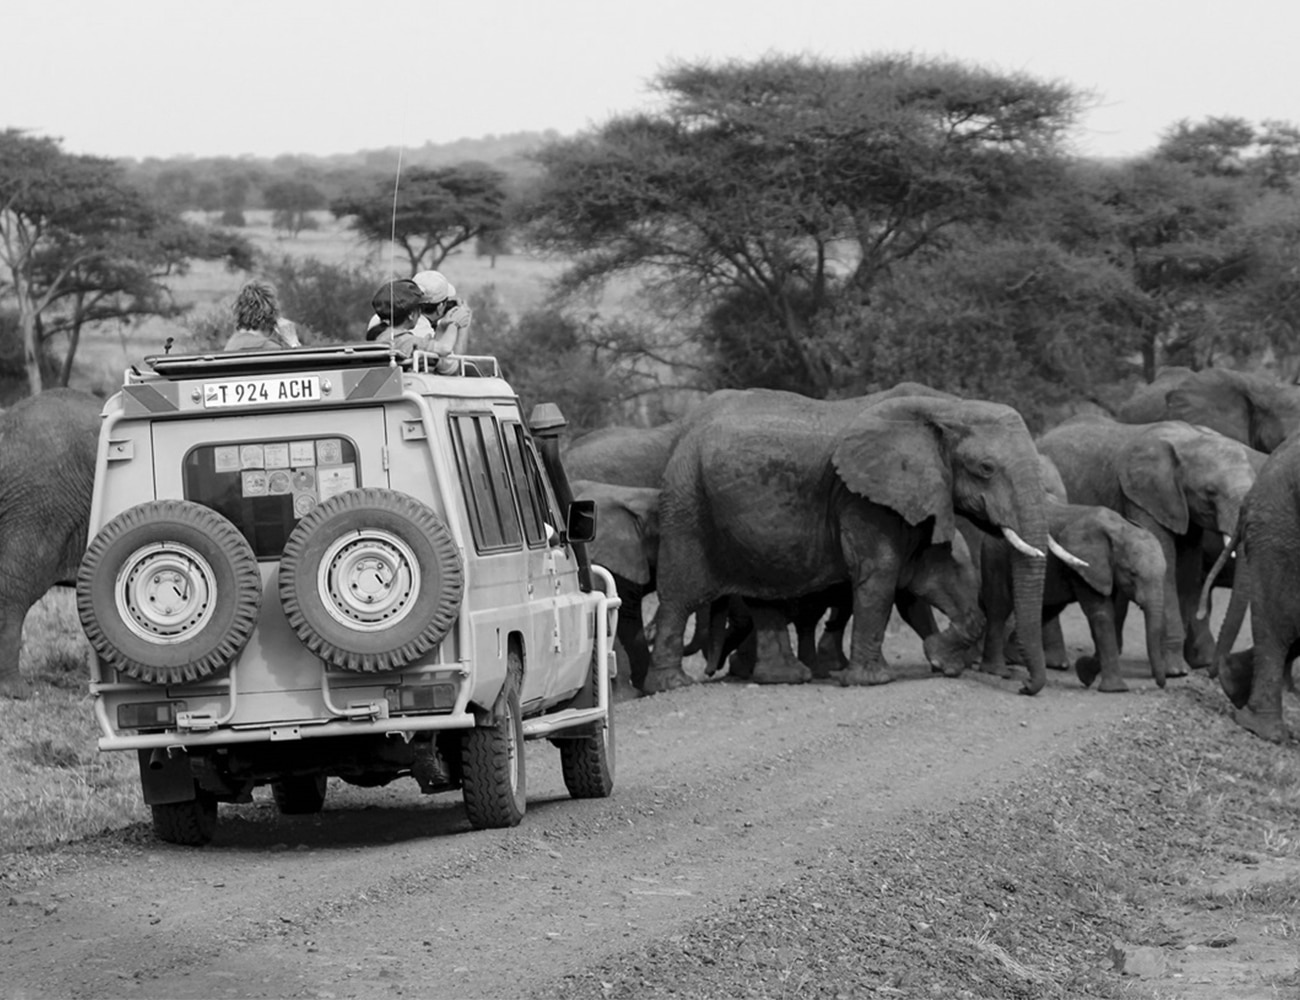 Tauck Tour Bus at the Serengeti